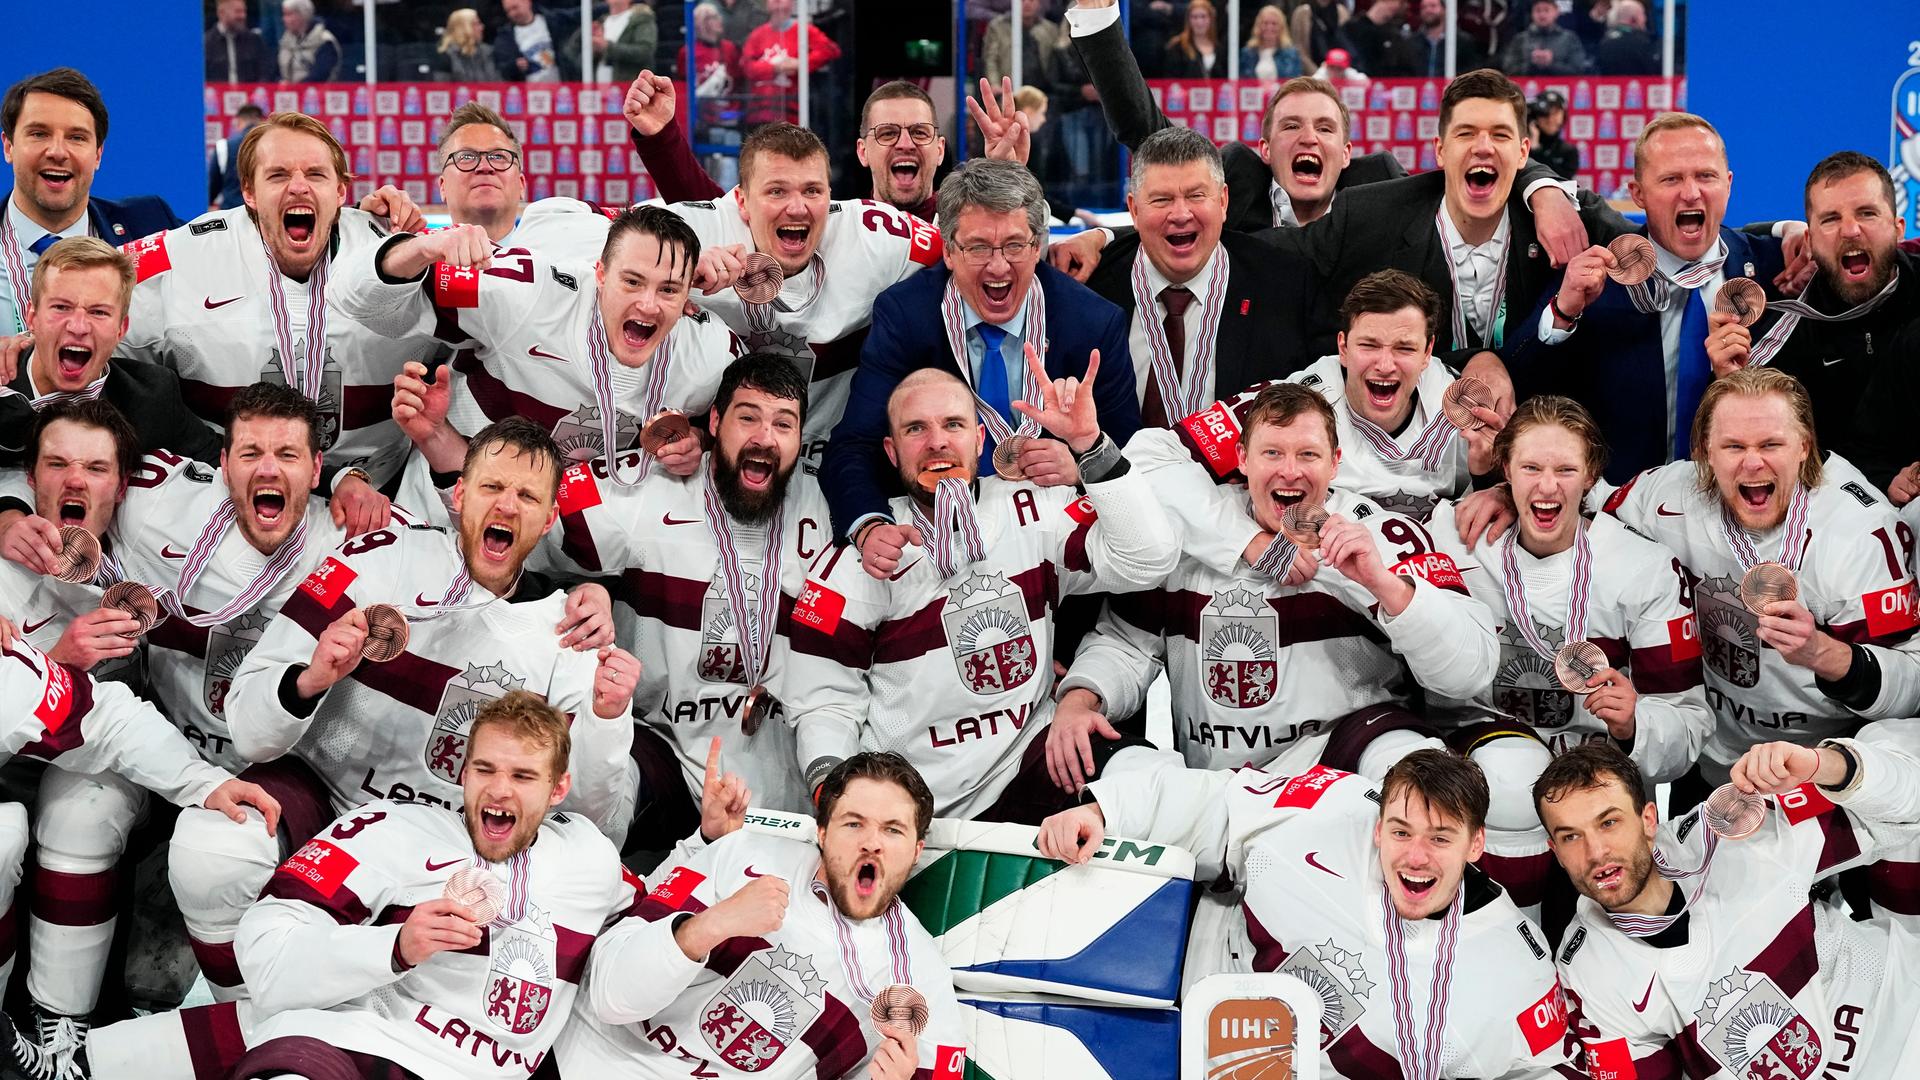 Das Foto zeigt die Spieler der lettischen Eishockey-Nationalmannschaft. Sie posieren nach der Siegerehrung zusammen für Fotos.